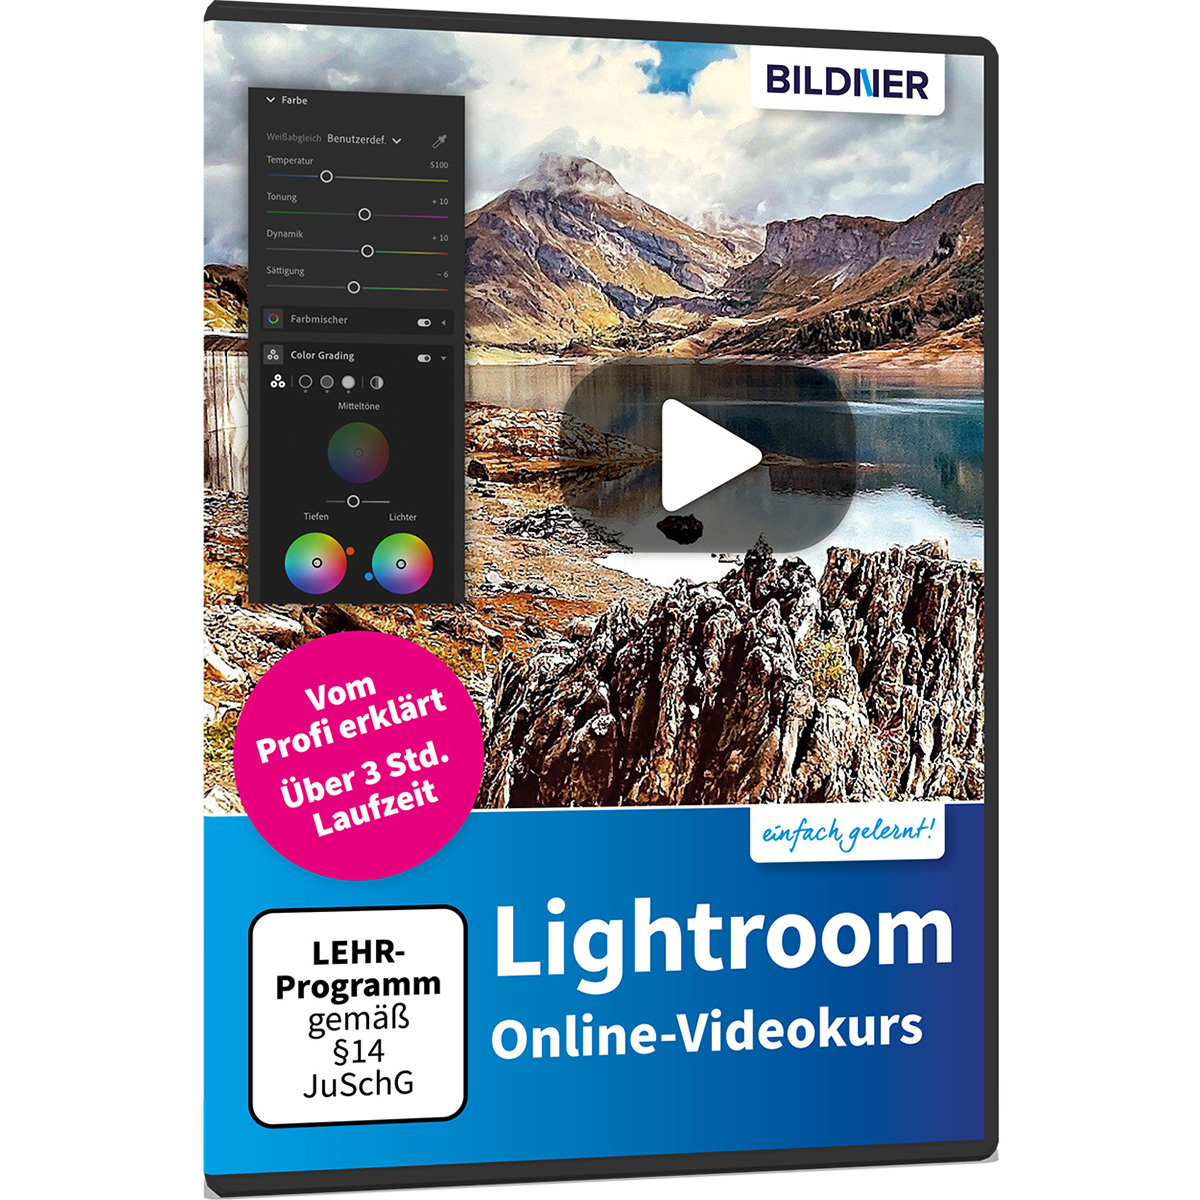 Lightroom Online-Videokurs